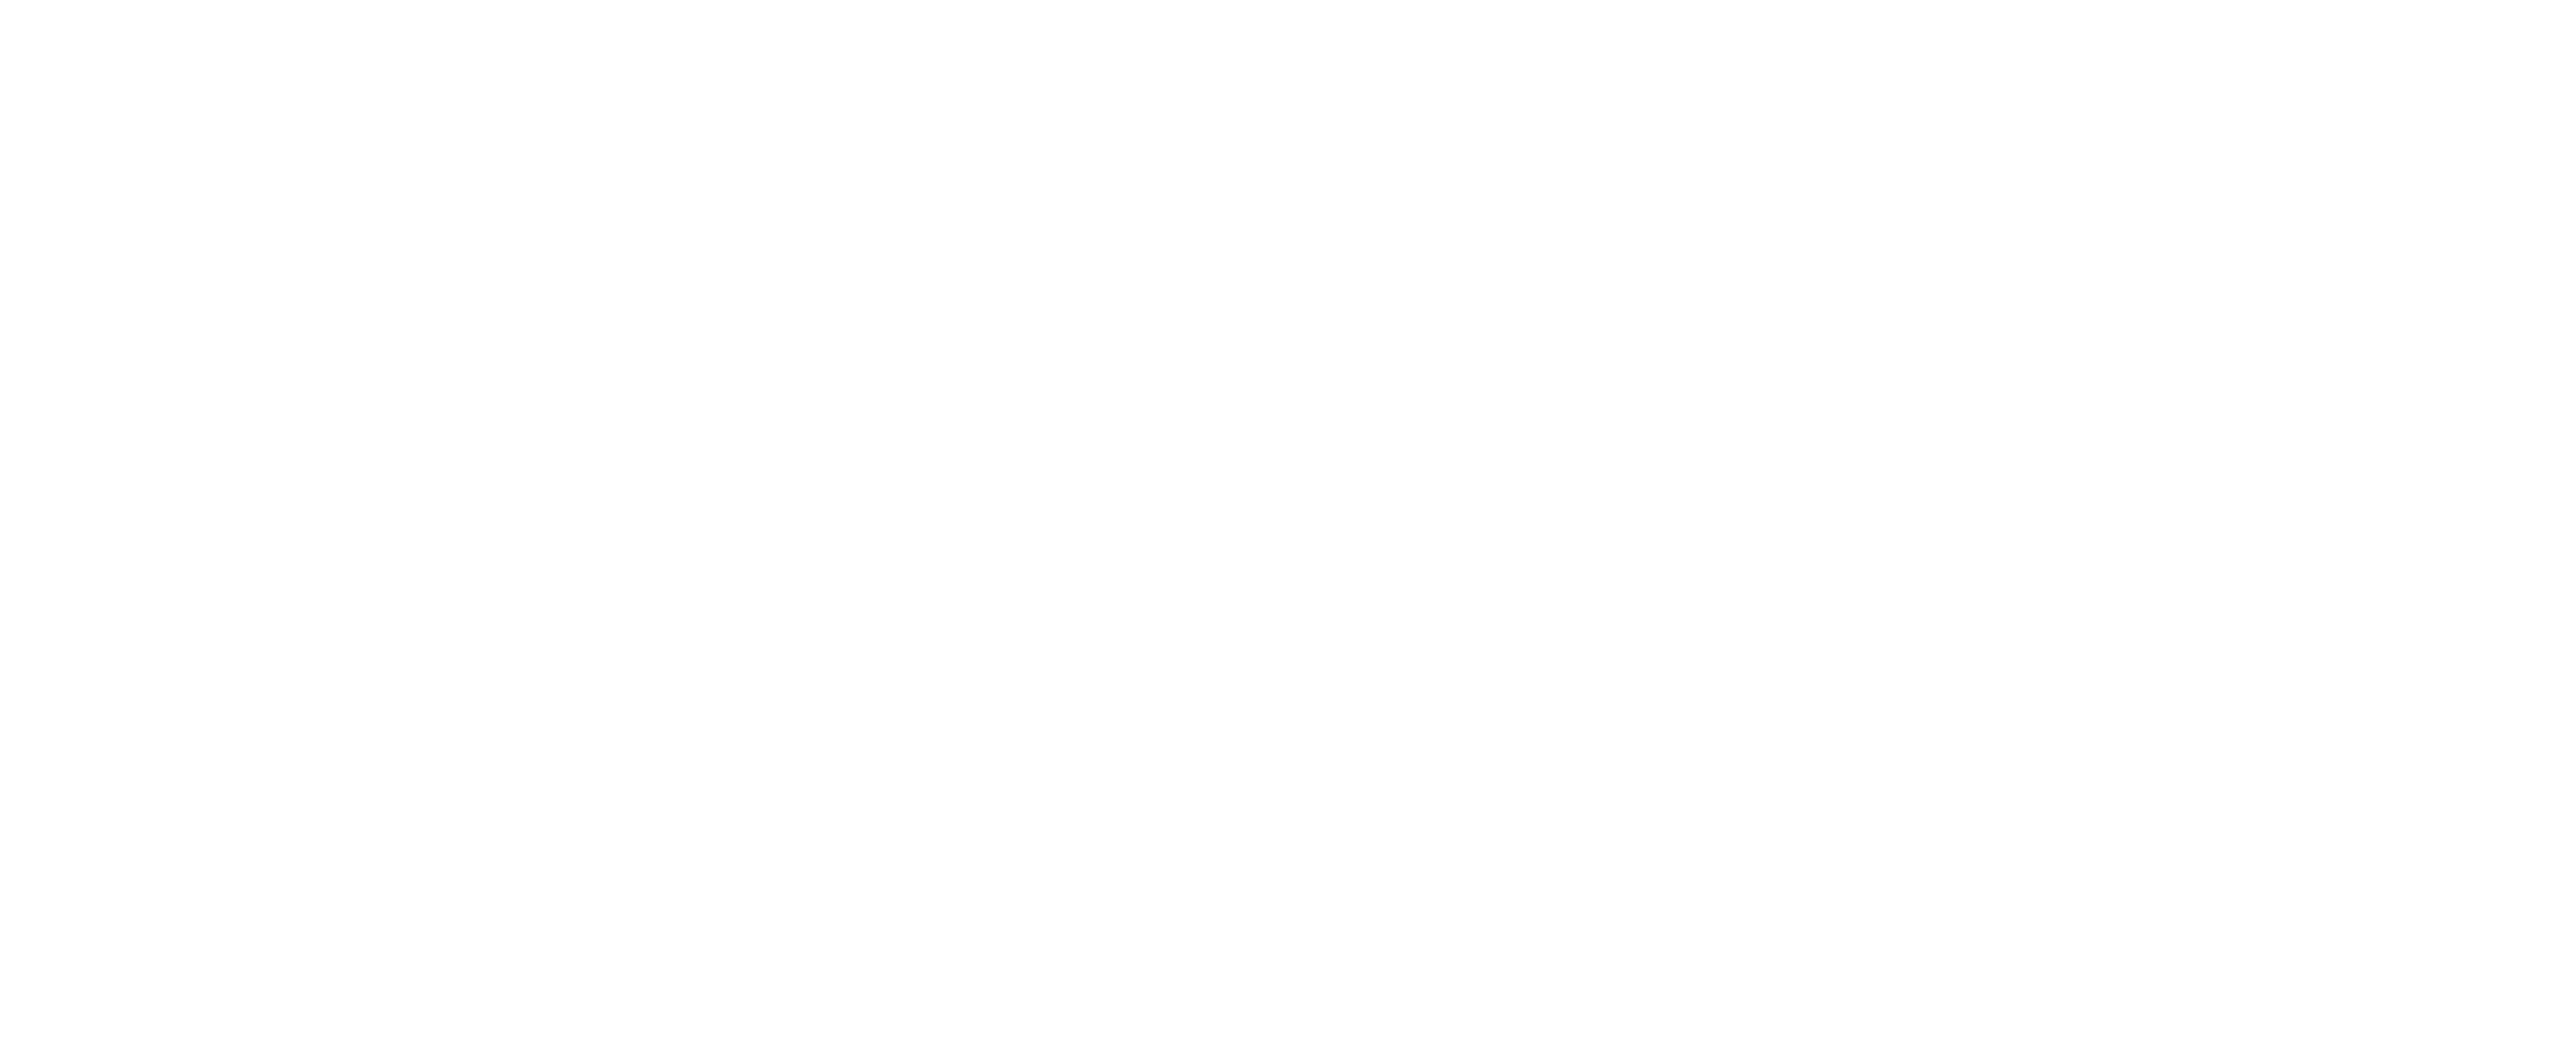 The Charles Nedder Team